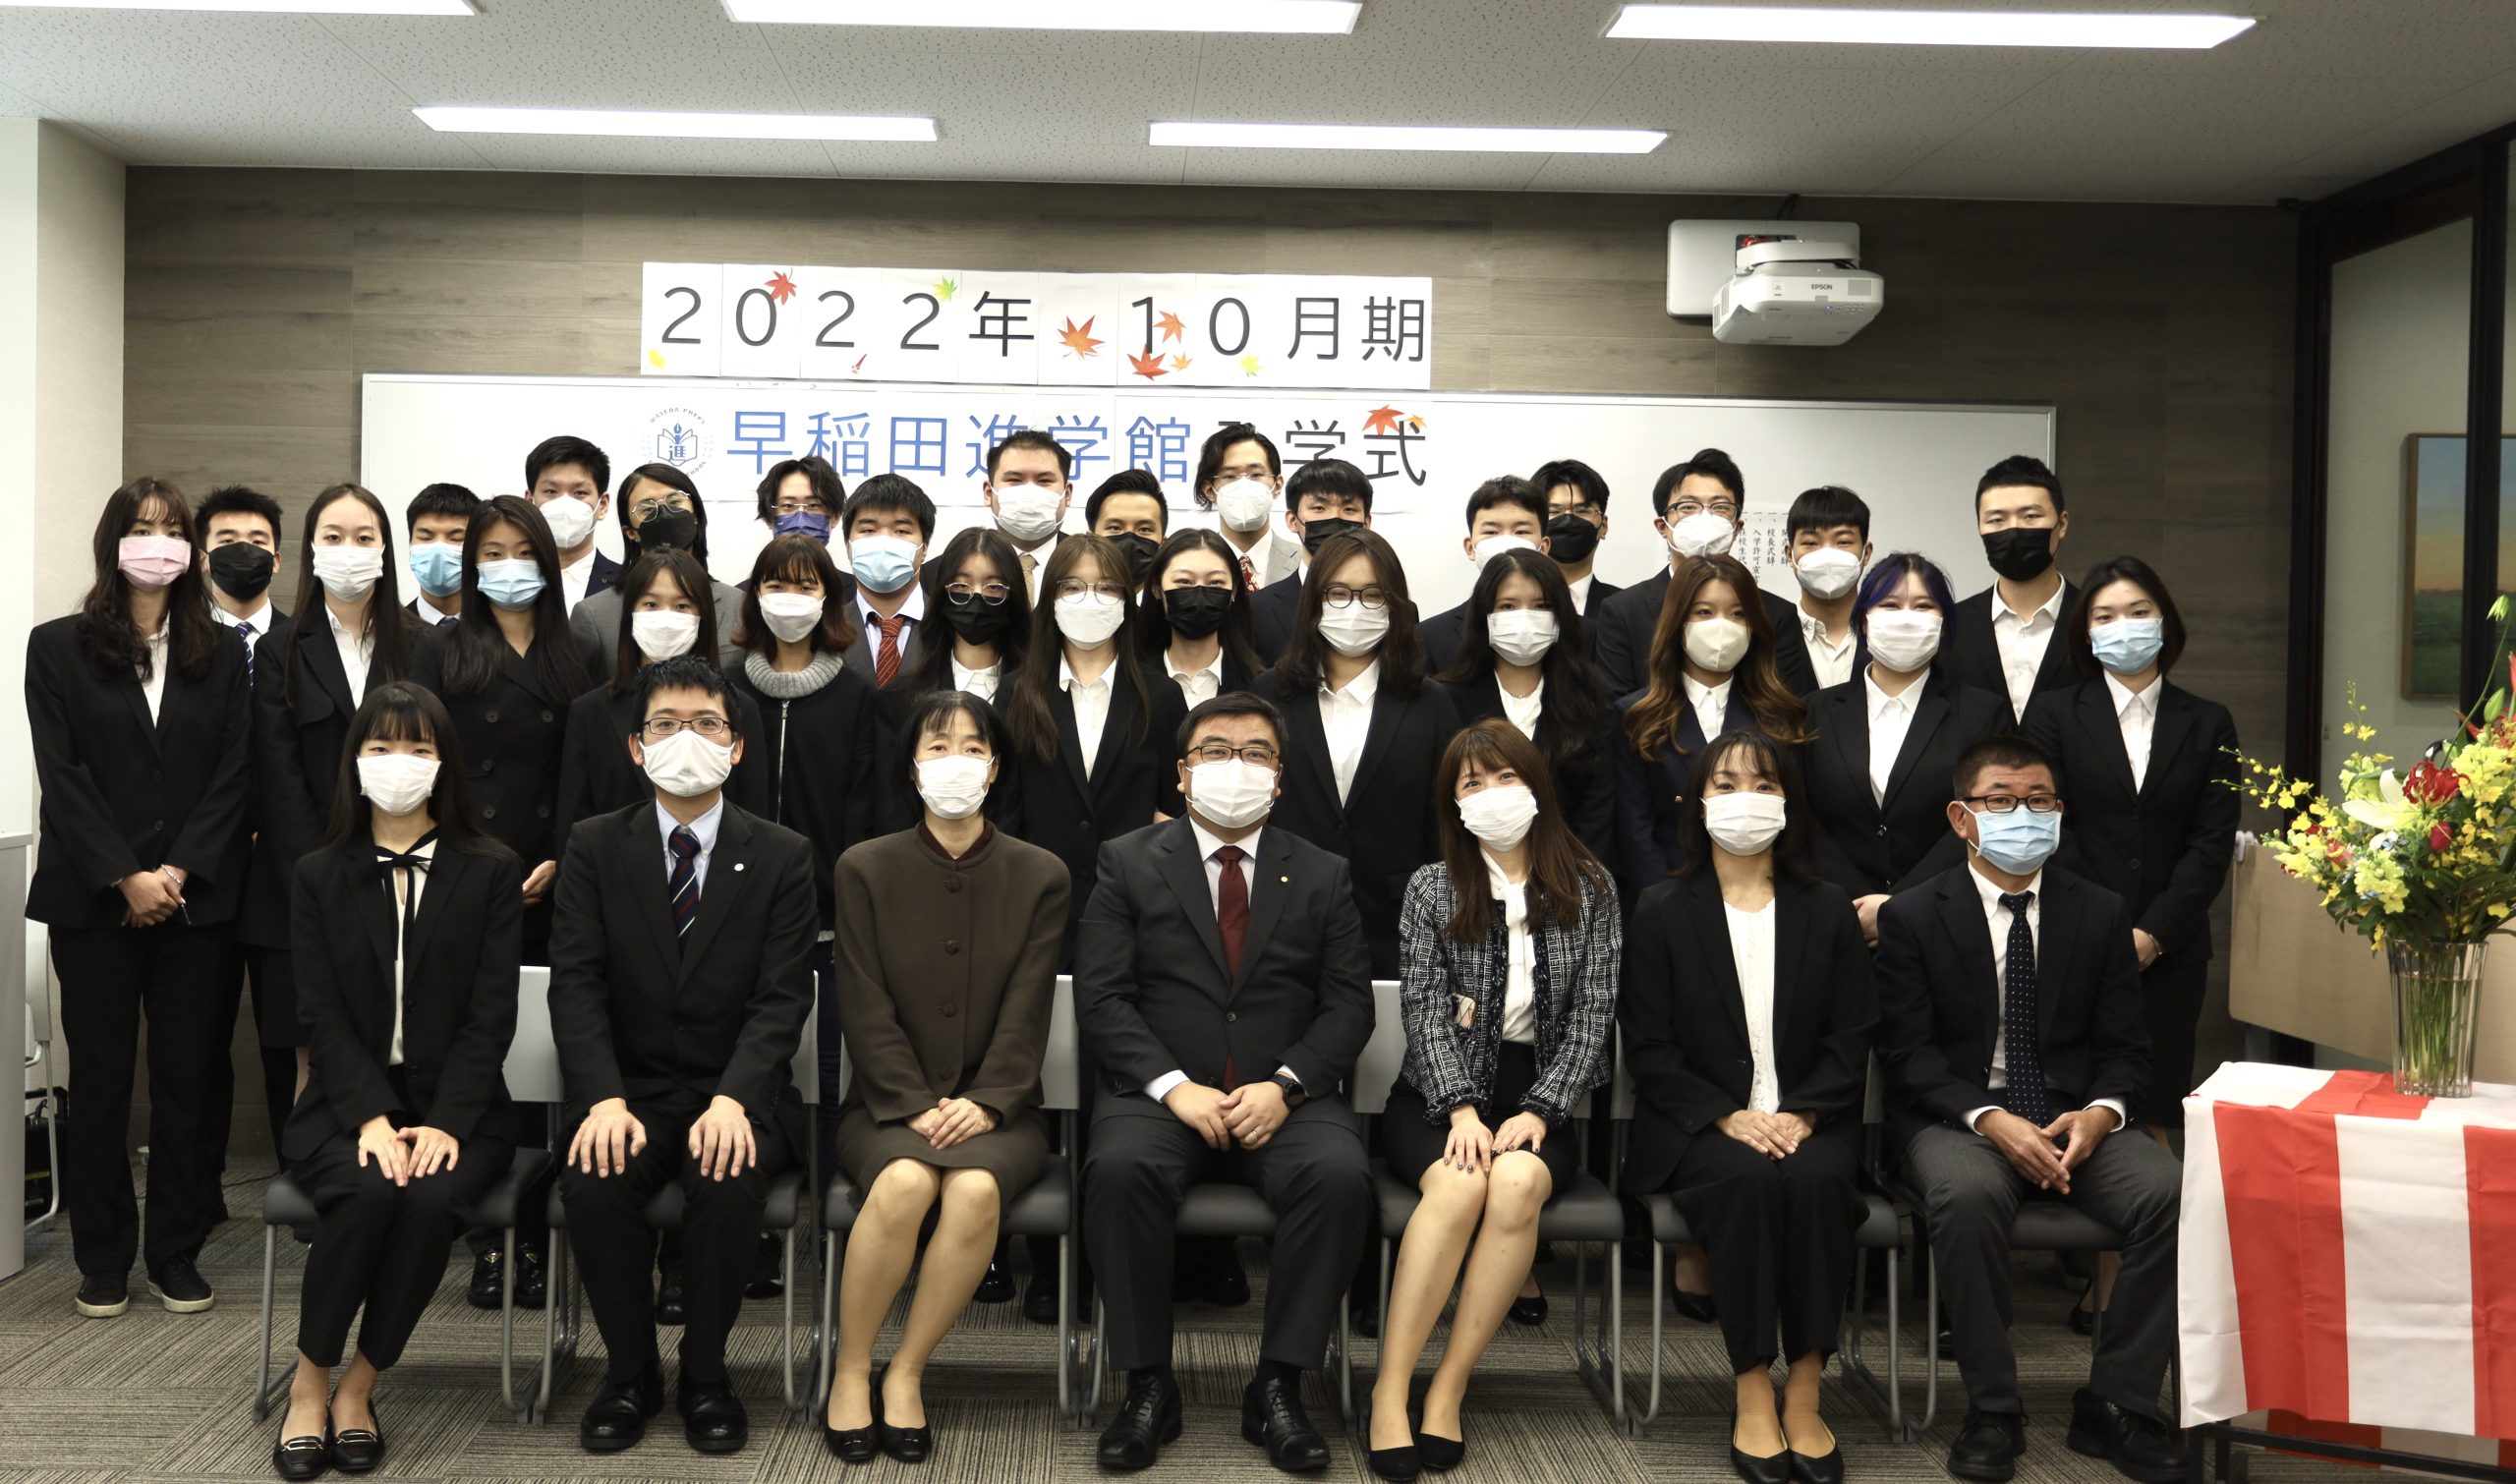 【活動】2022年10月生入學式